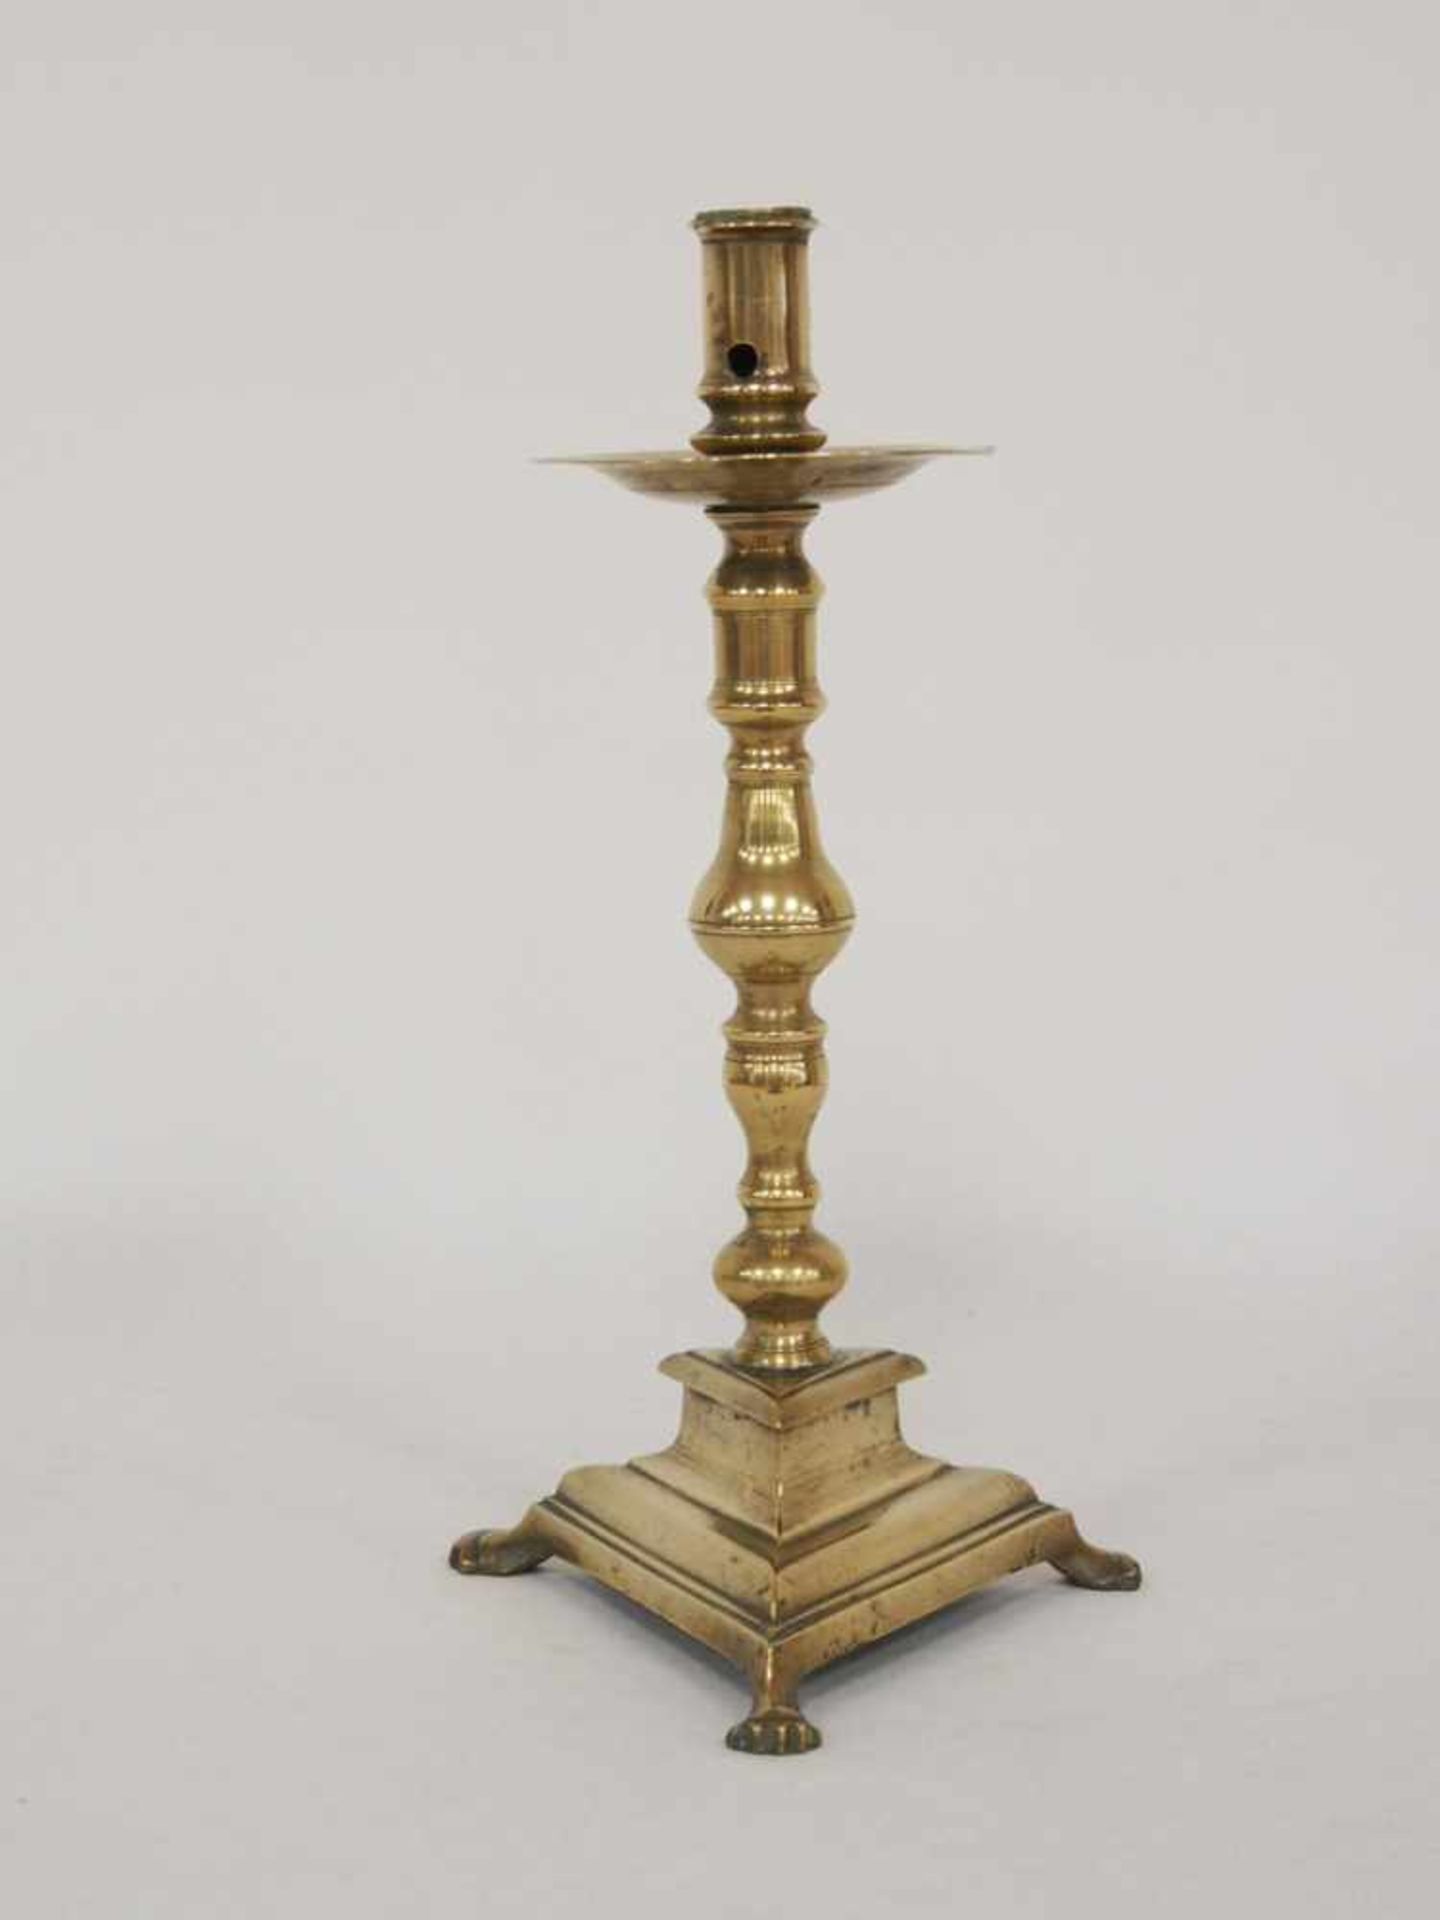 Kerzenleuchter mit TatzenfüssenMessing, Höhe 33 cm, Deutsch 17. Jahrhundert- - -25.00 % buyer's